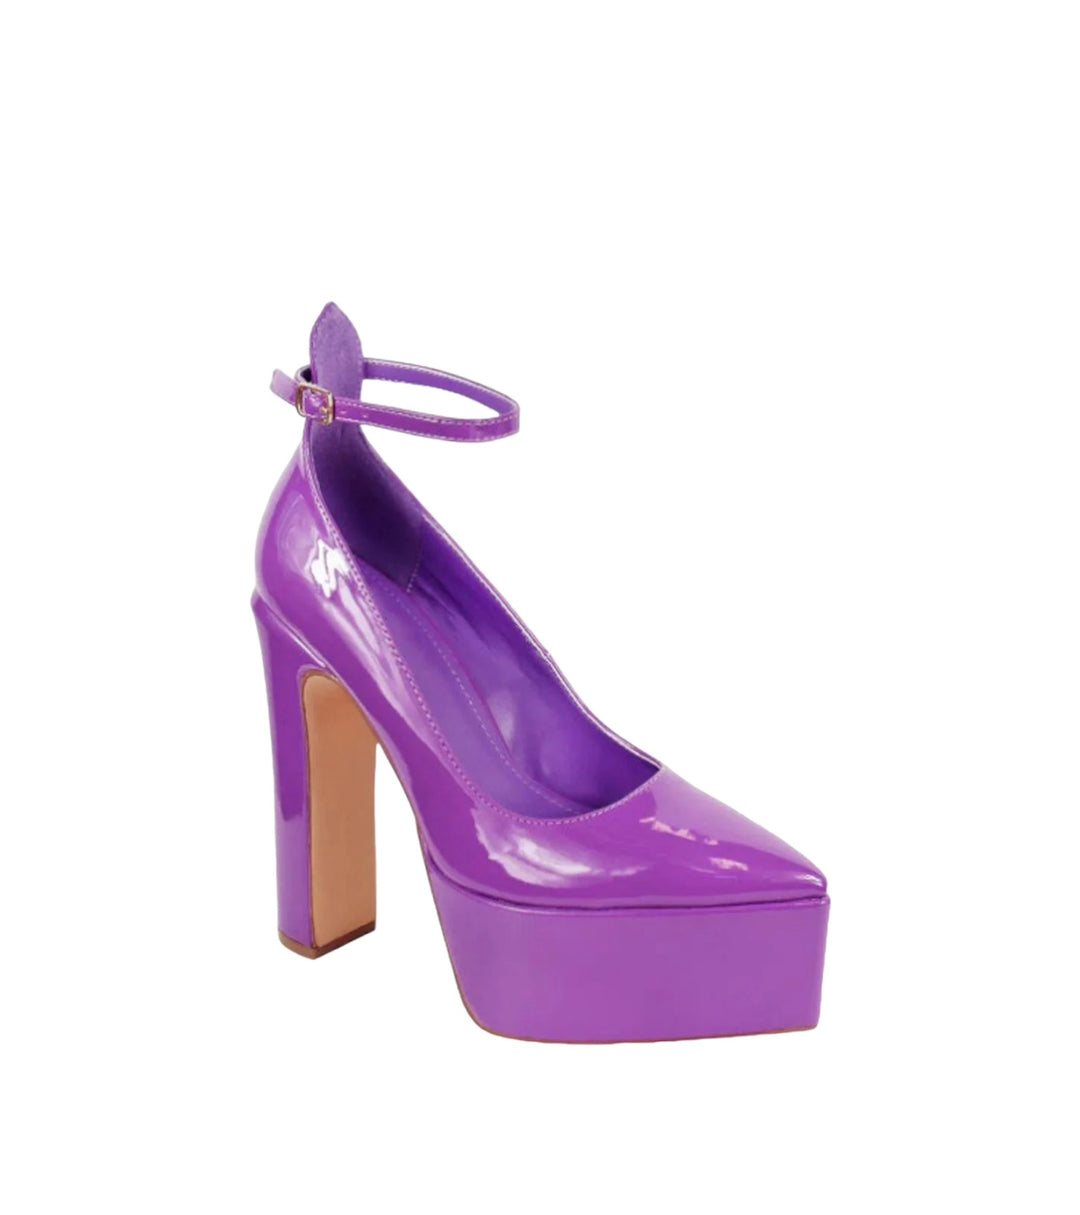 Purple Chic Platform Heels, Size 8.5